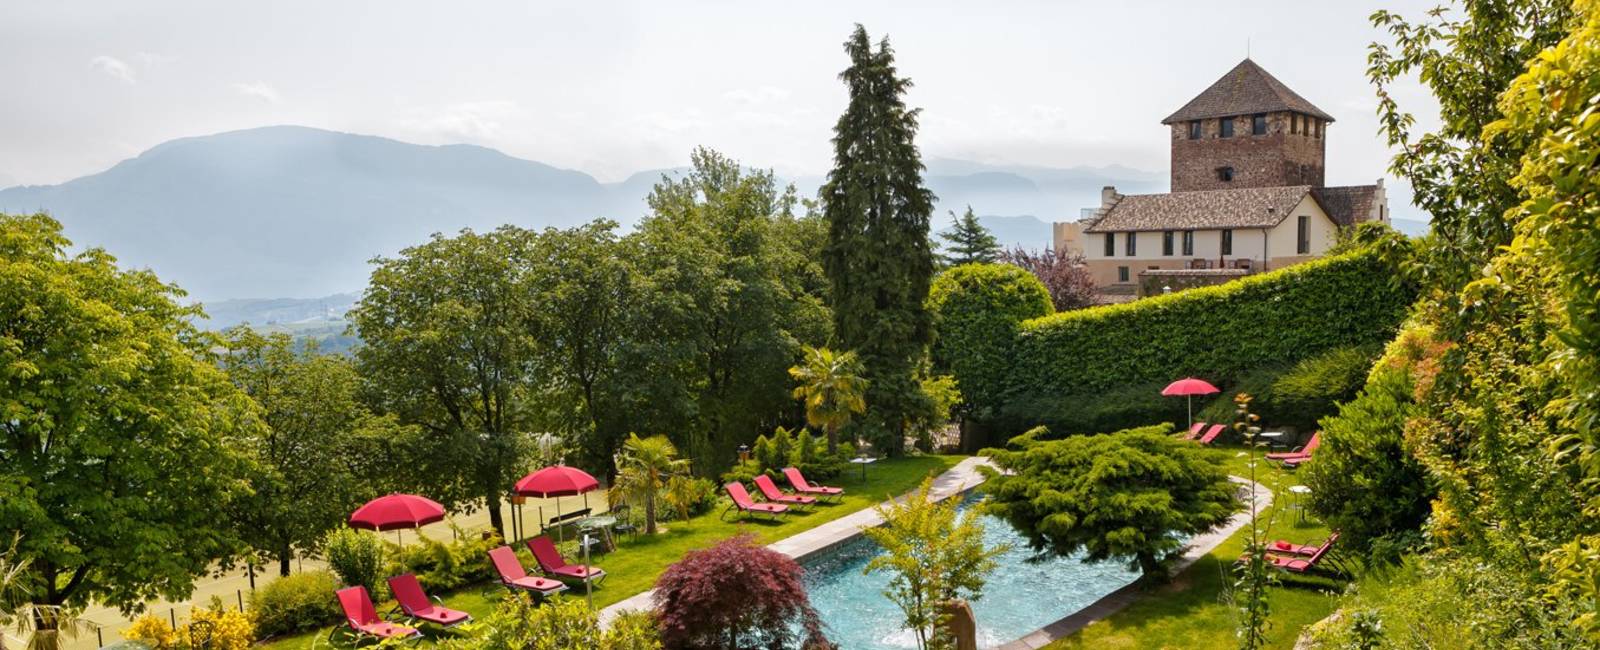  Südtirol 

Die besten romantischen Hotels